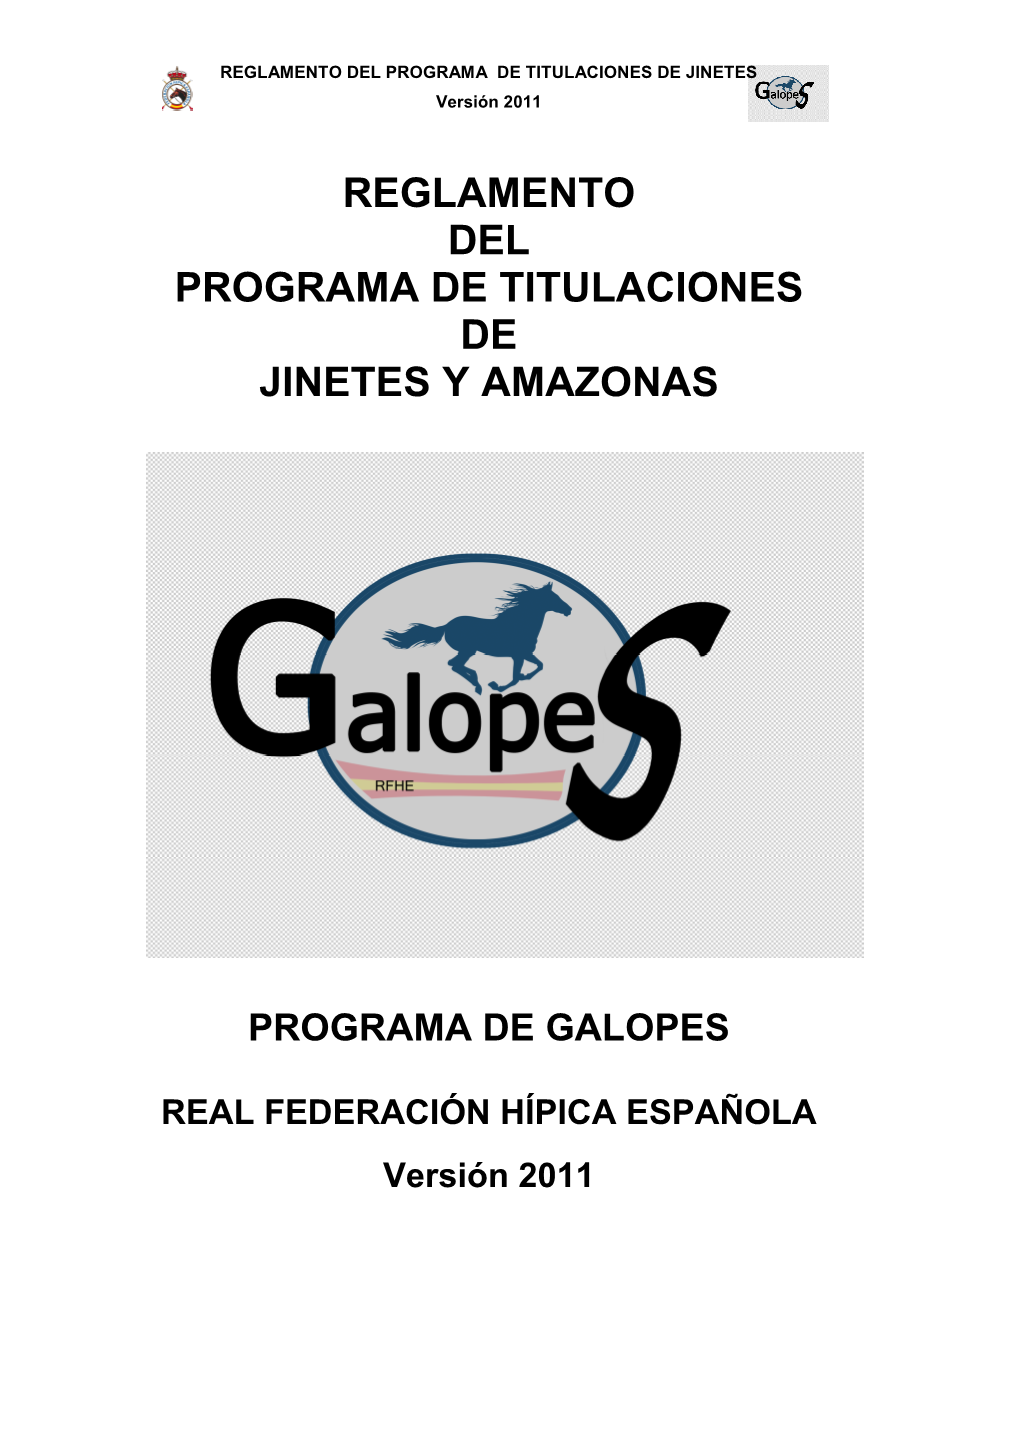 REGLAMENTO DE TITULACIONES GALOPES Version 2011 VISTO EN